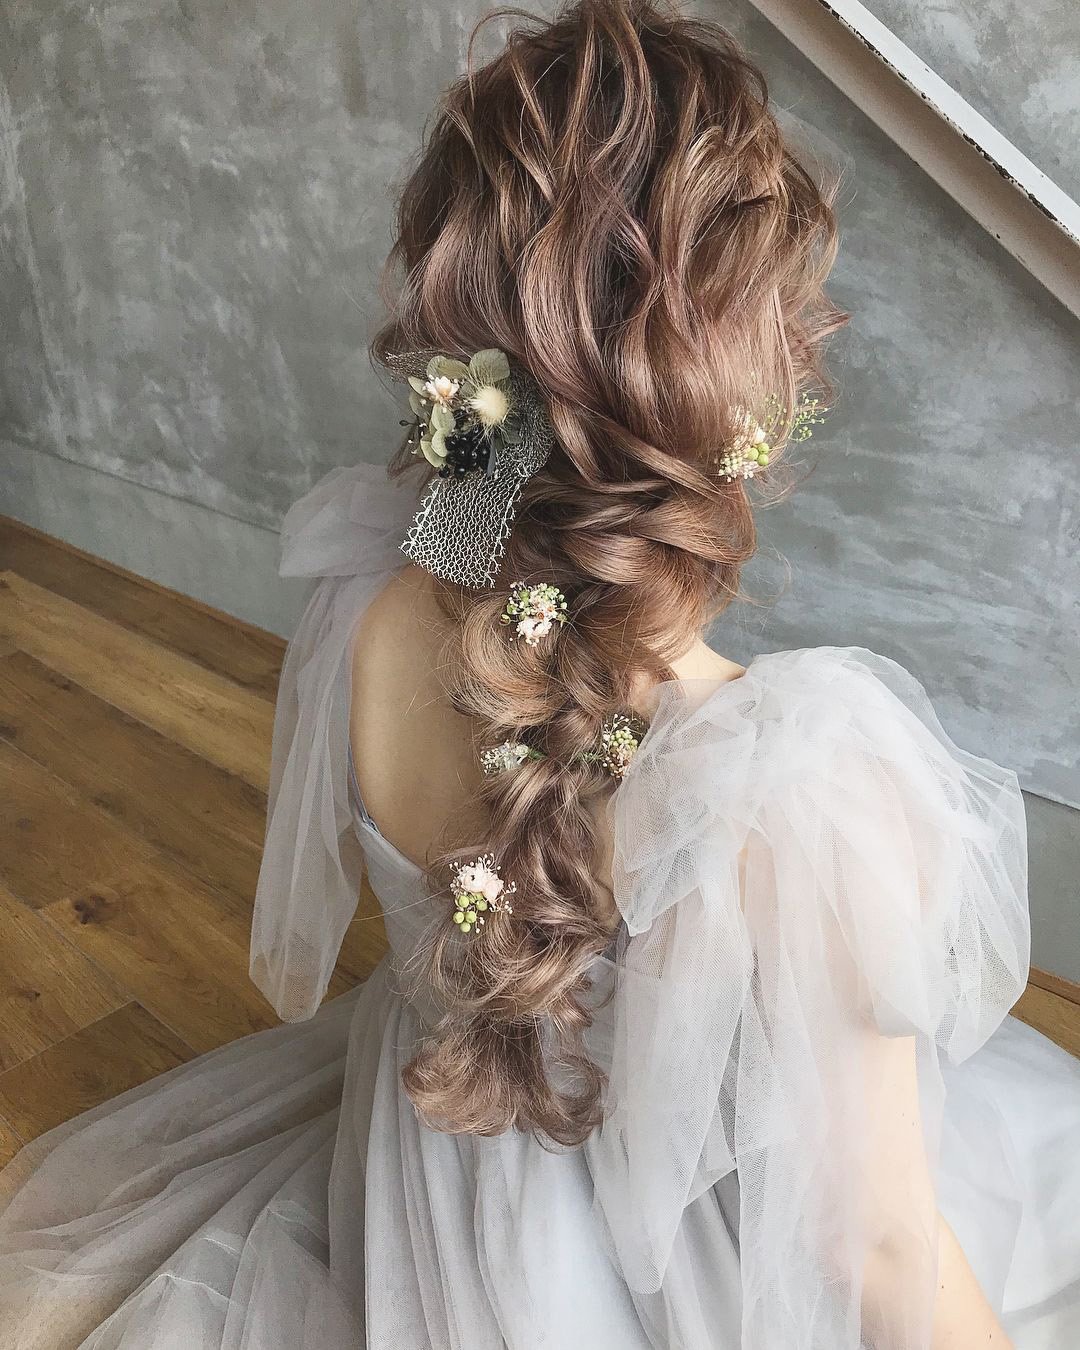 wedding hairstyles with flowers wavy curly hair braid hikaru_jilljanne